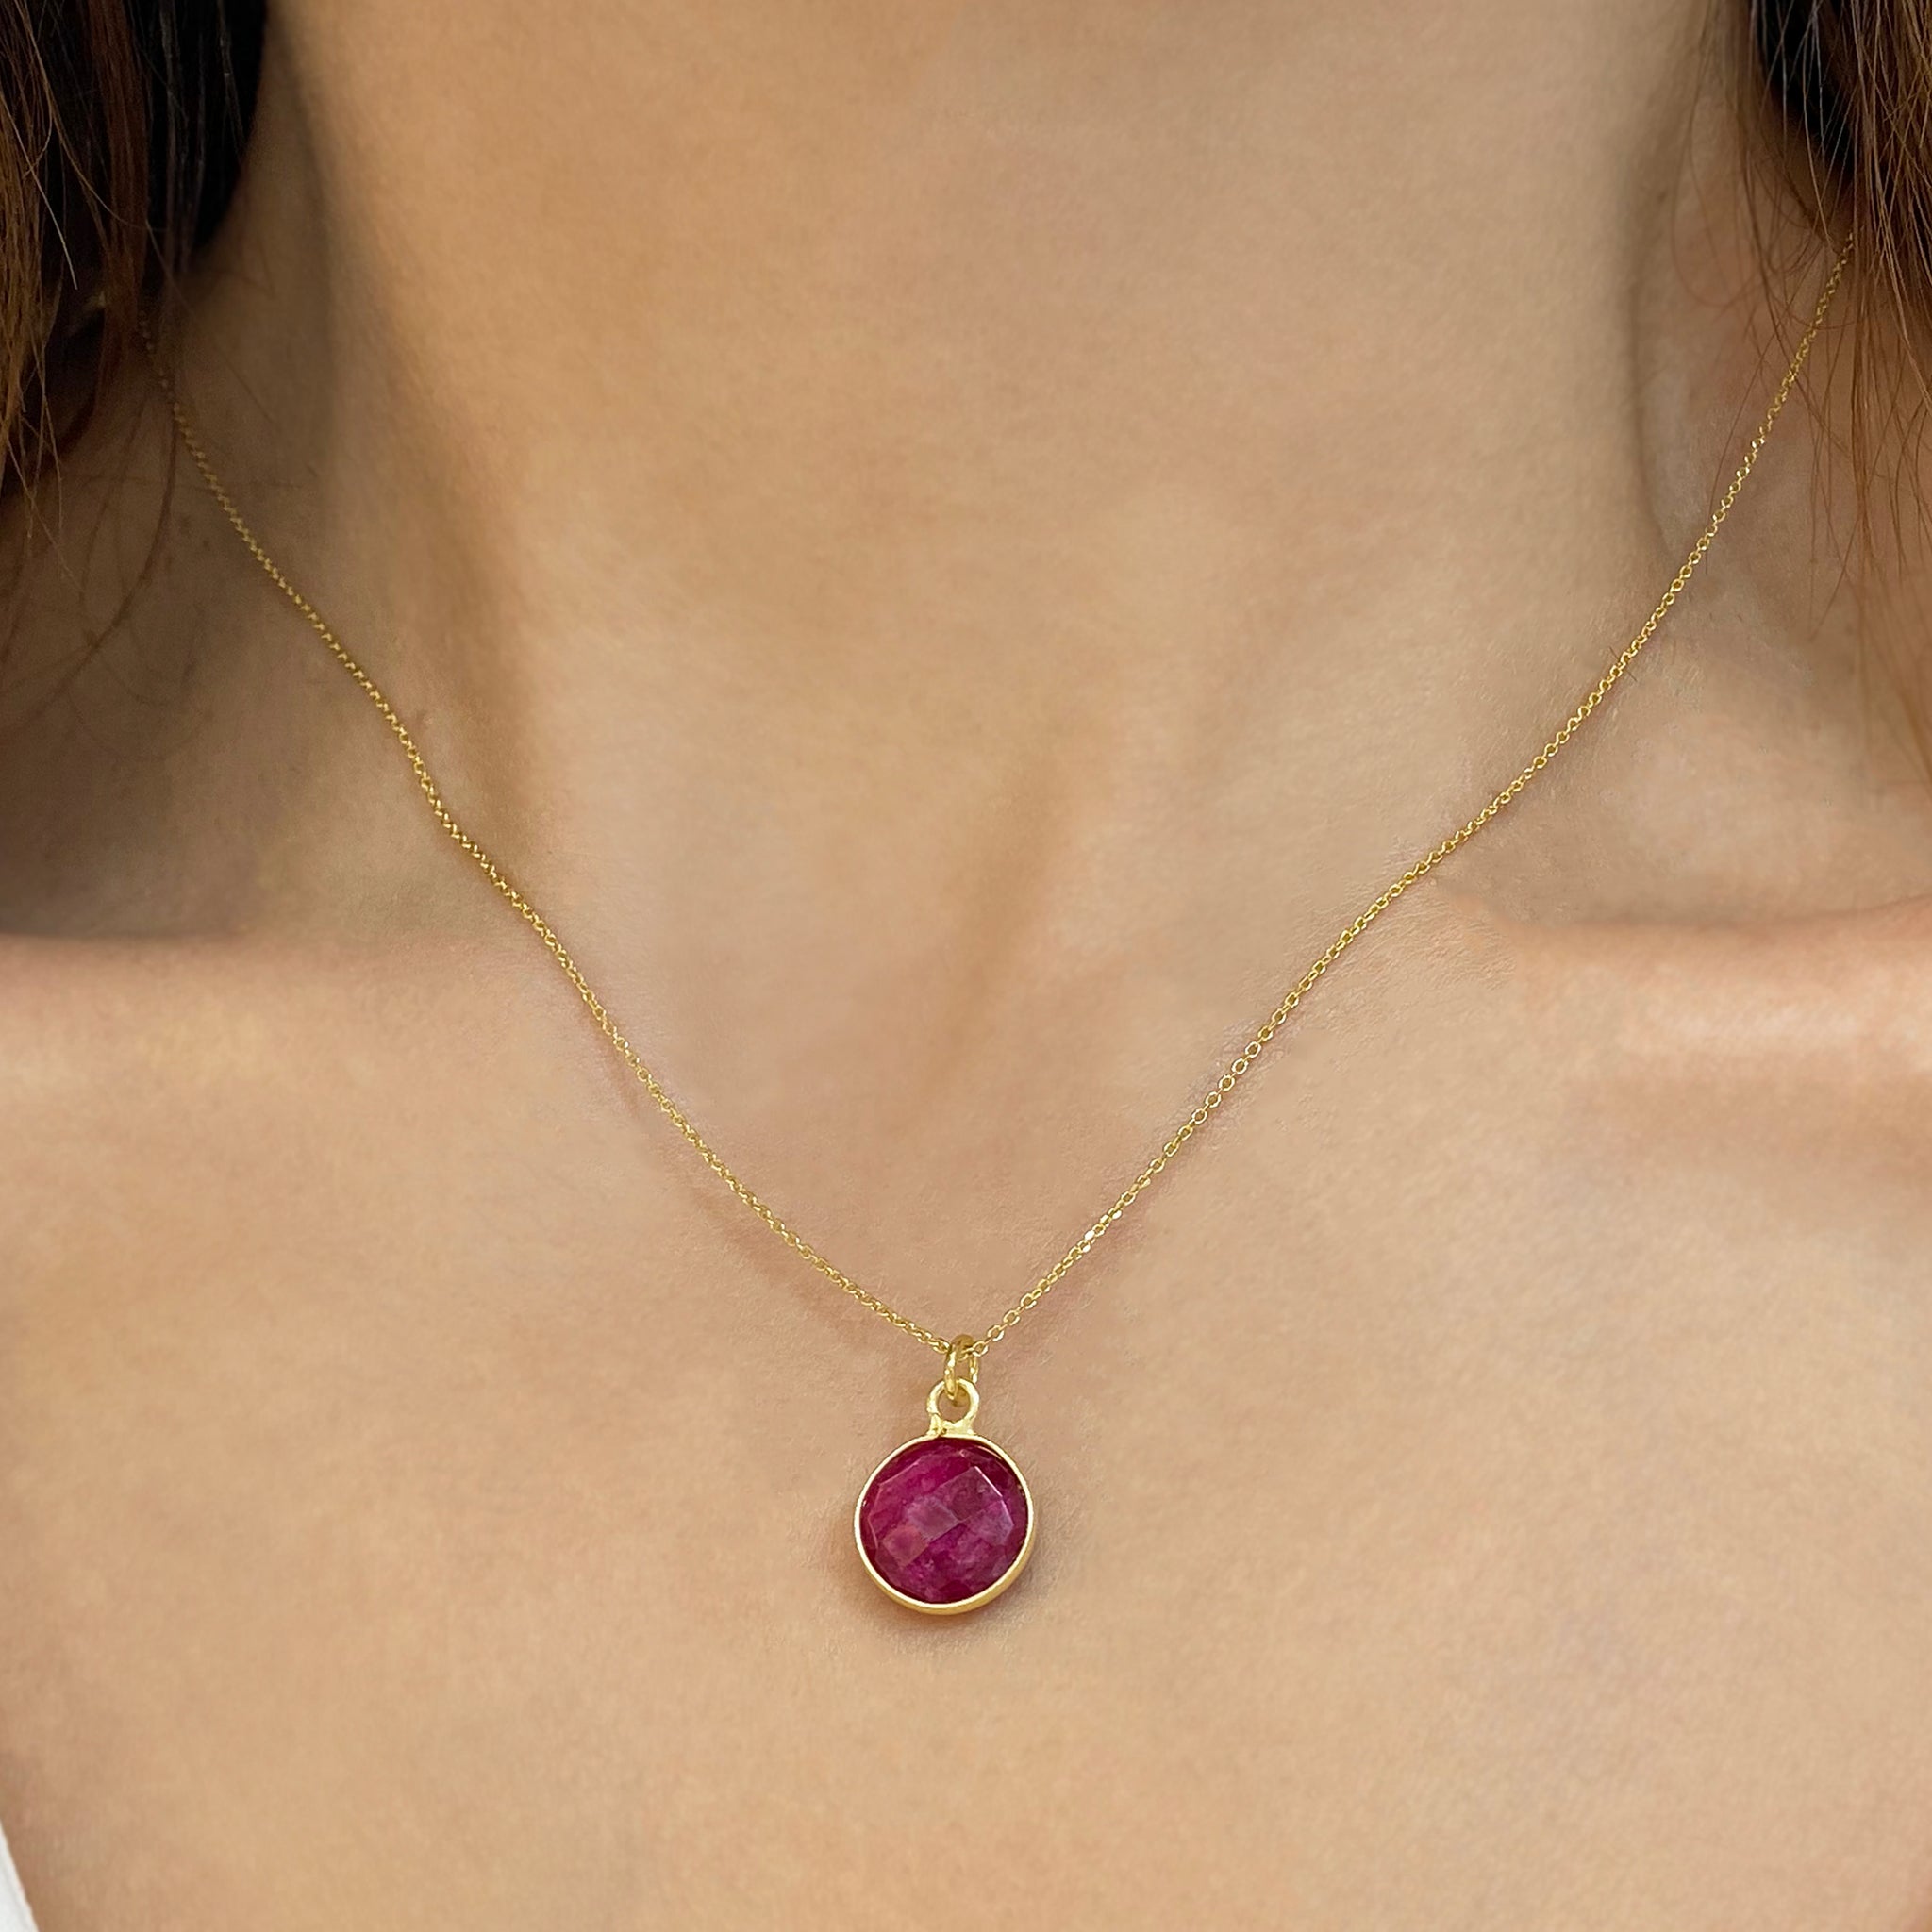 Buy Ruby Necklace Designs Online | CaratLane